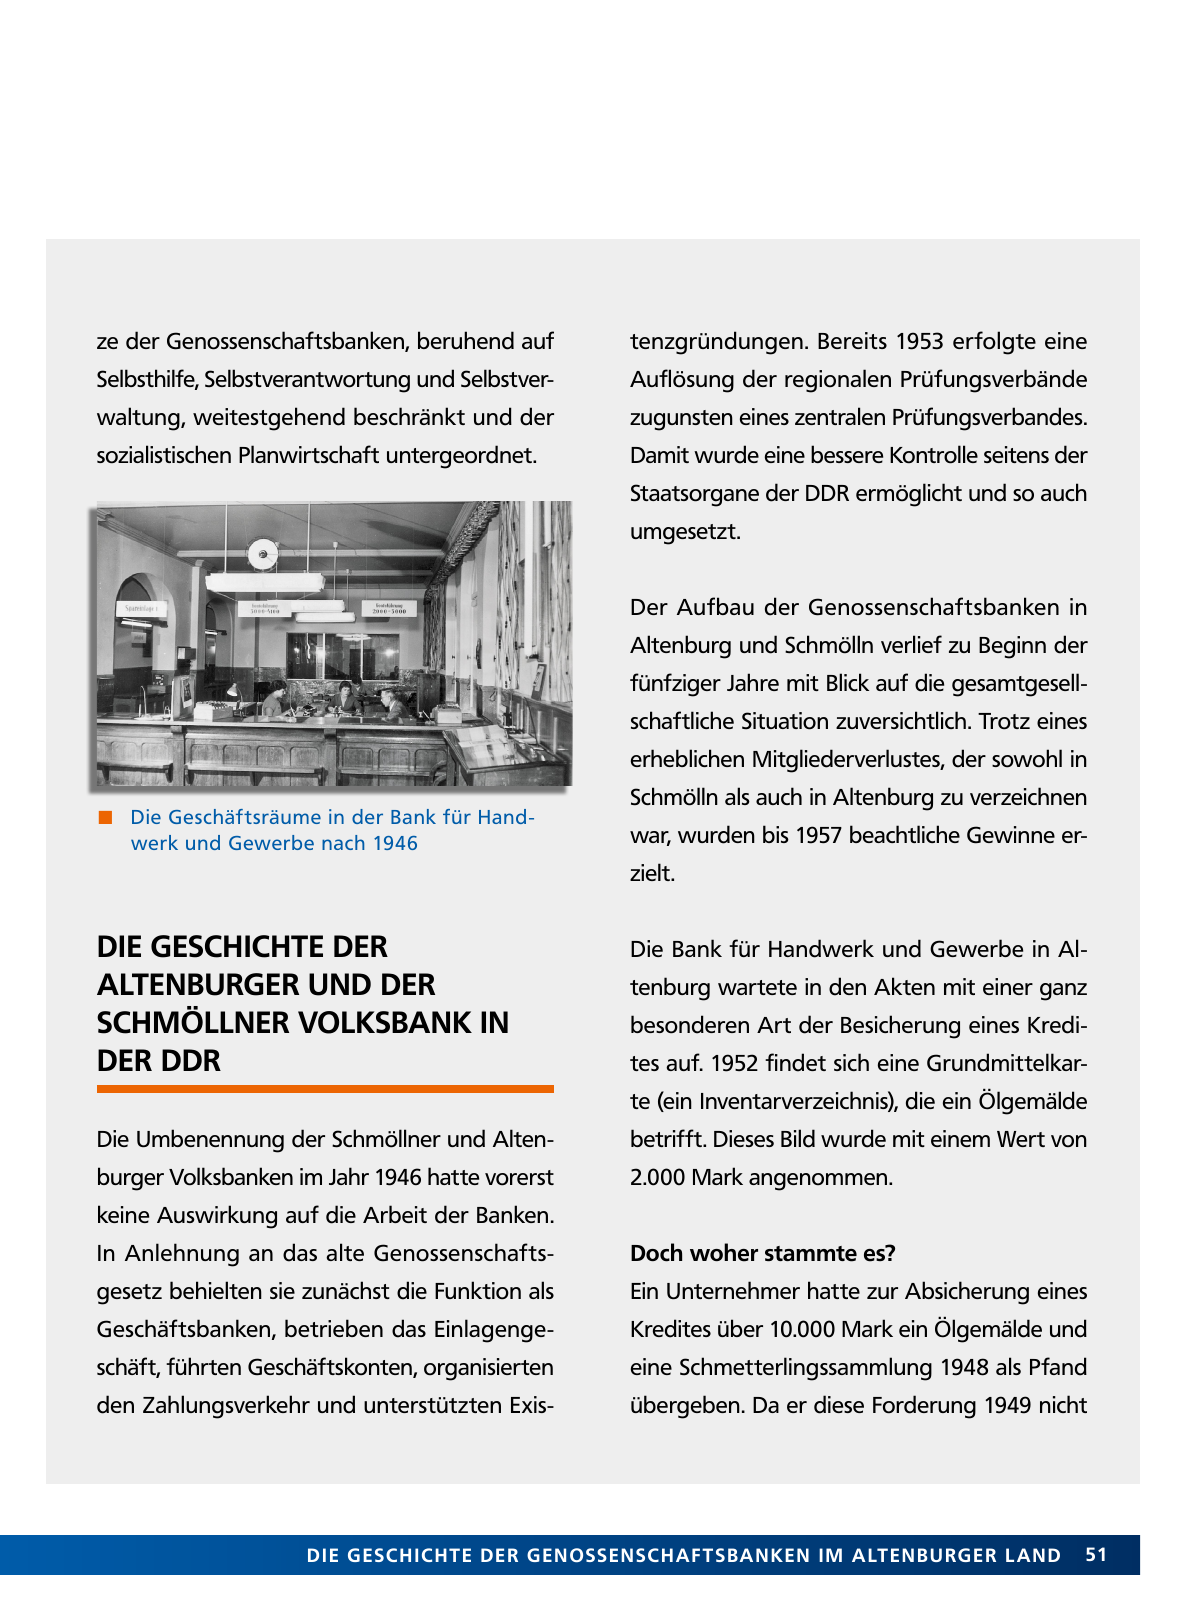 Vorschau Von der Idee, sich selbst zu helfen – 150 Jahre genossenschaftliches Bankwesen im Altenburger Land Seite 51